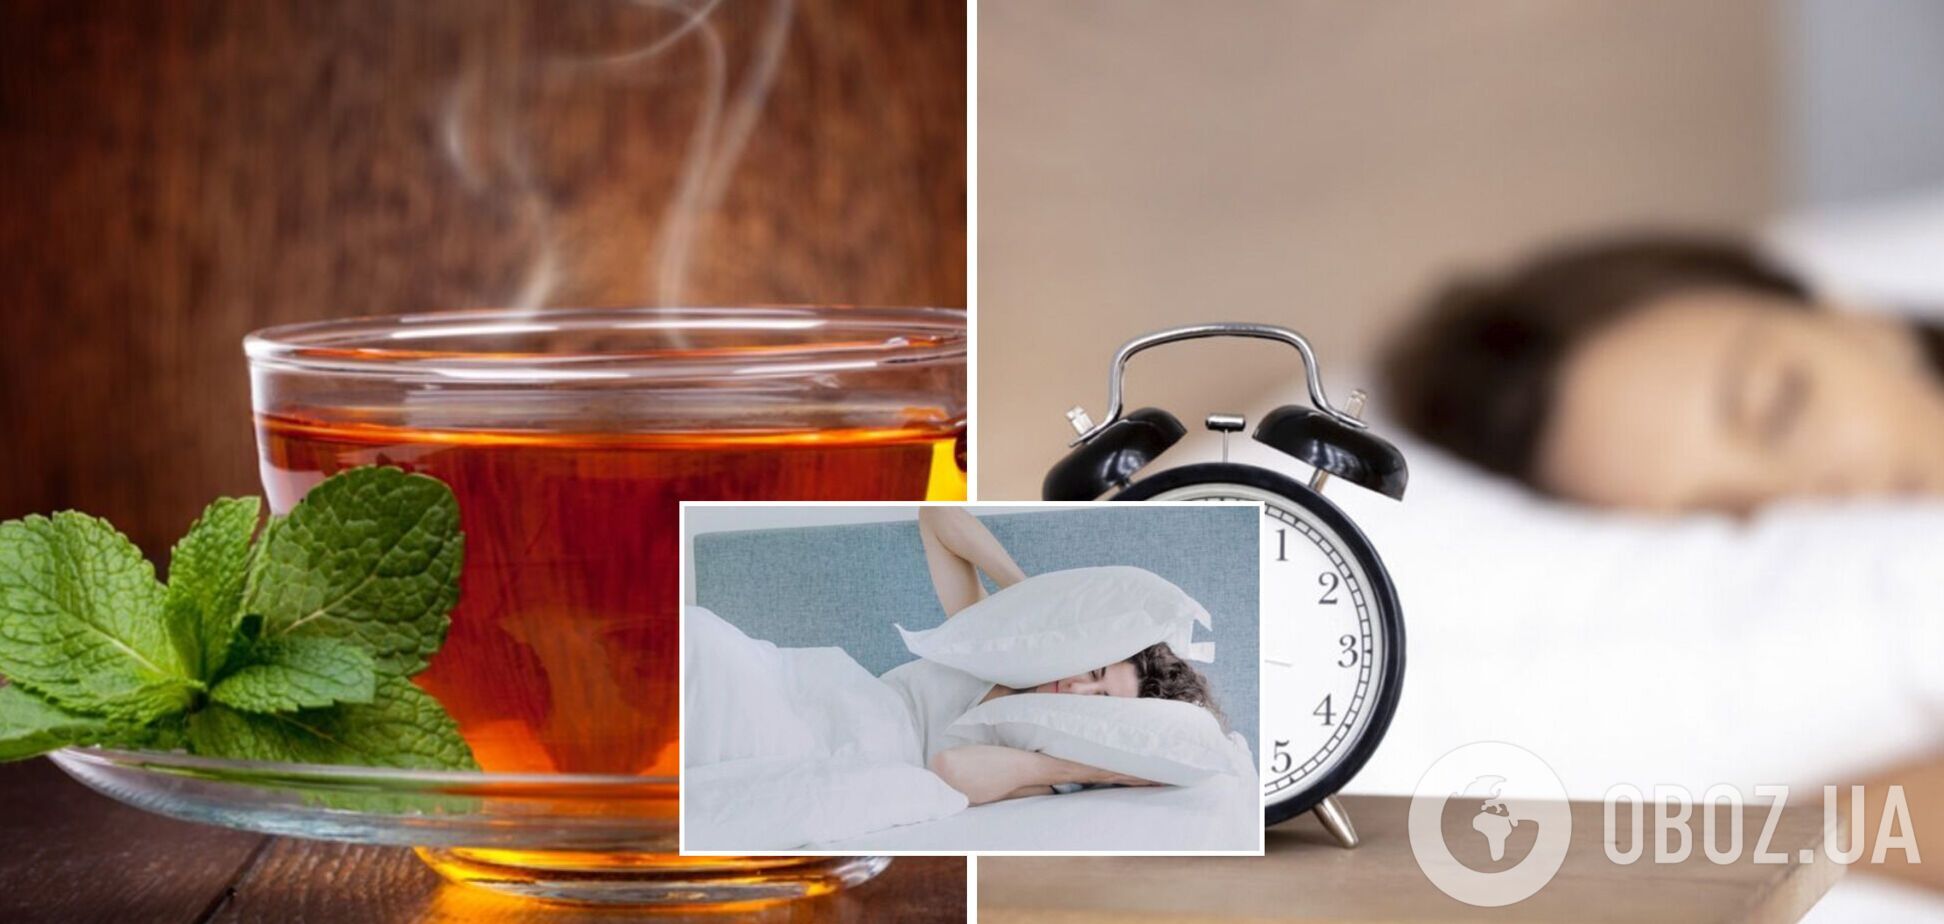 П'ять напоїв можуть помітно покращити якість сну: вчені поділилися результатами досліджень